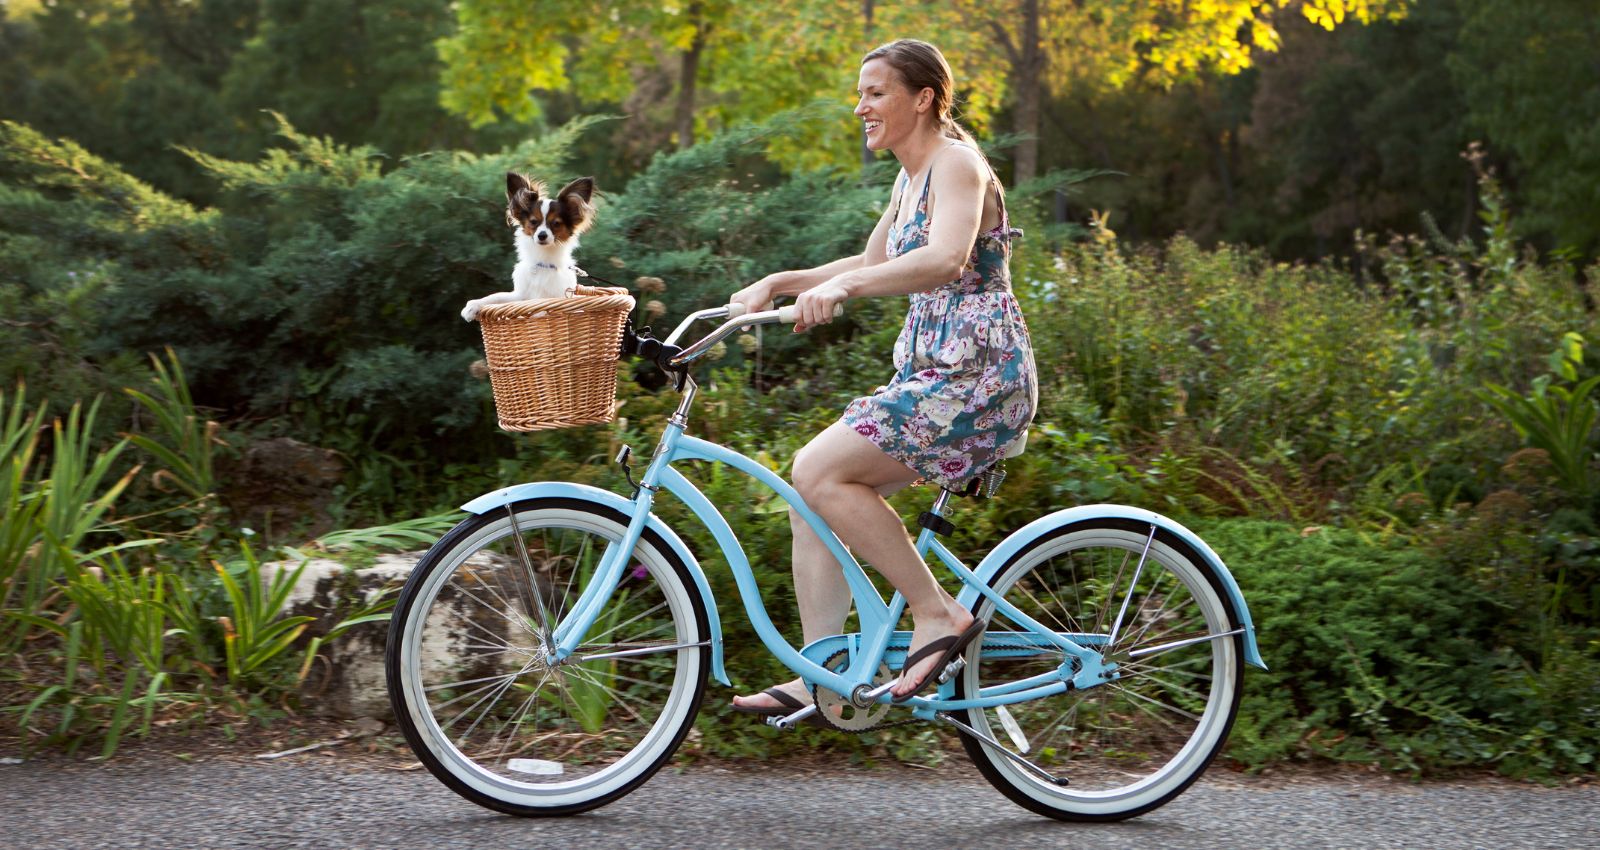 Fahrradkorb für Hunde bis 10 kg